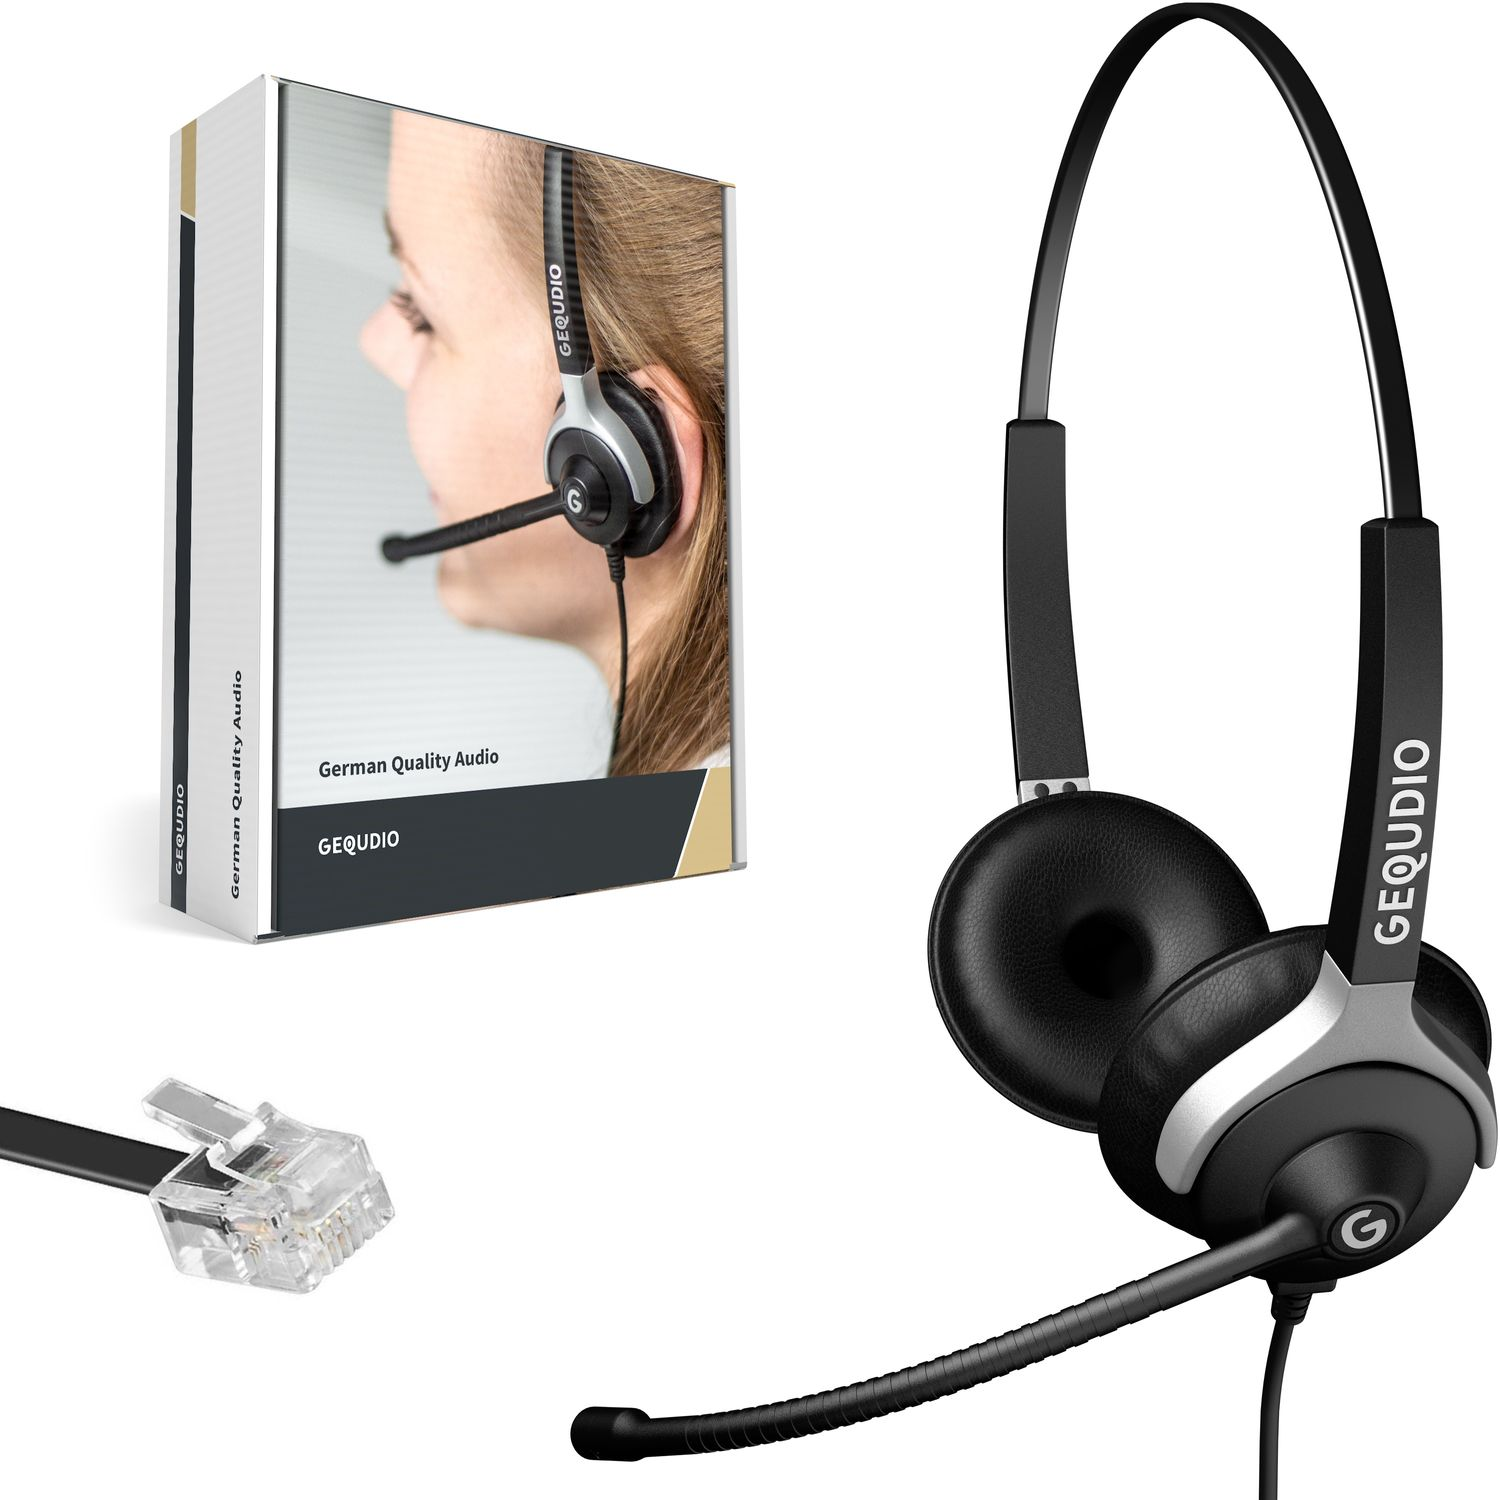 Headset On-ear GEQUDIO Unify Kabel, 2-Ohr für Schwarz mit Headset